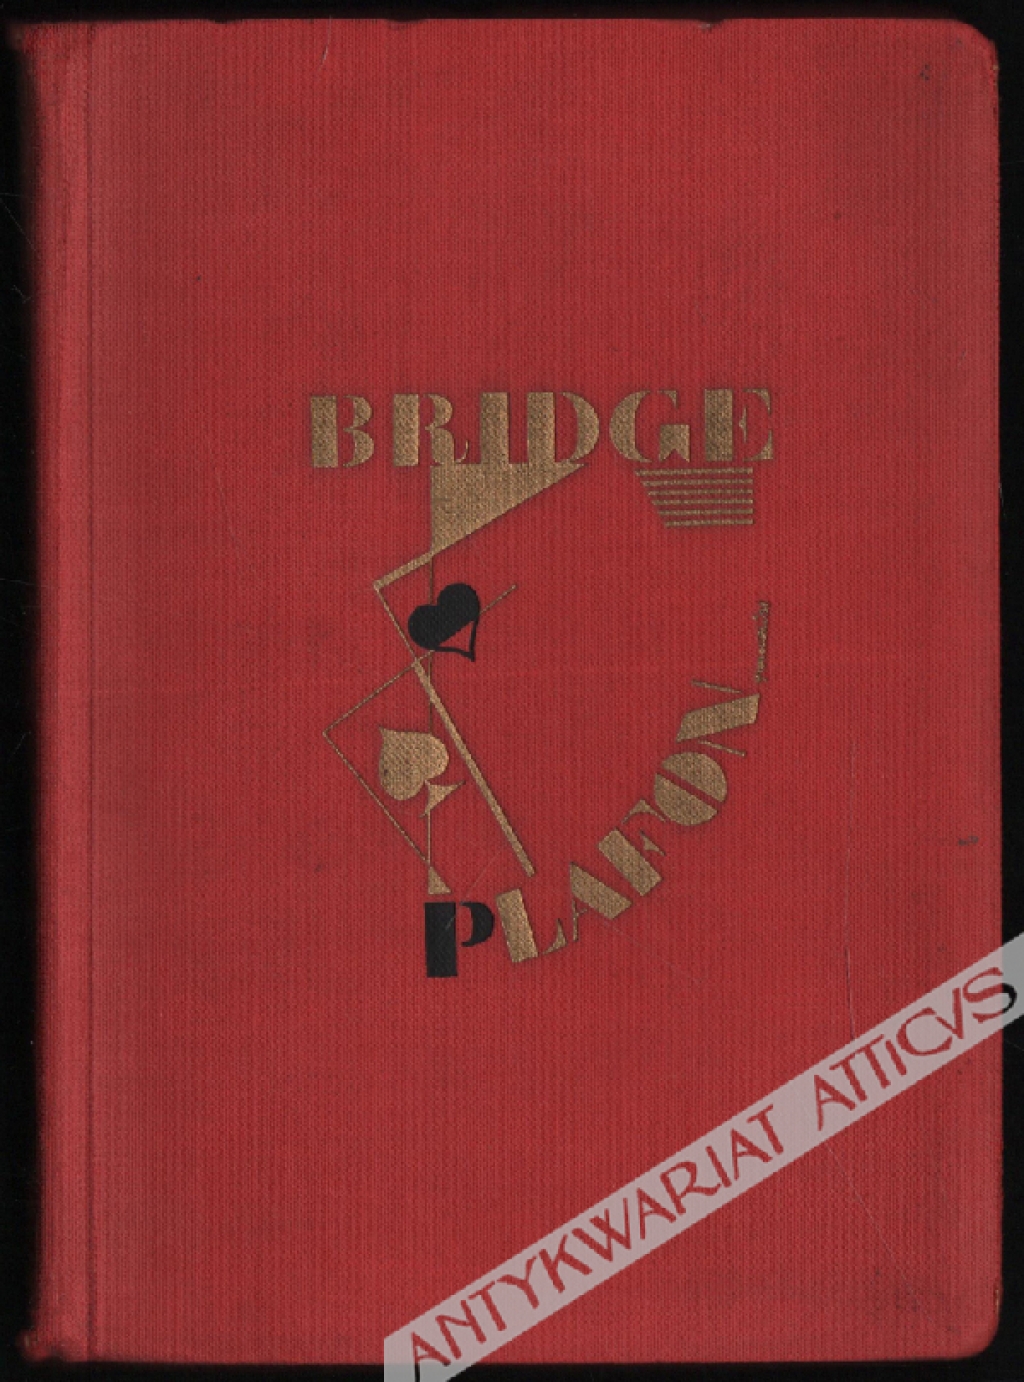 Prawidłowy bridge-plafon. Podręcznik dla pragnących grać poprawnie w plafona. Z przykładami prawidłowych licytacji i rozgrywki według specjalnie ułożonych wzorów